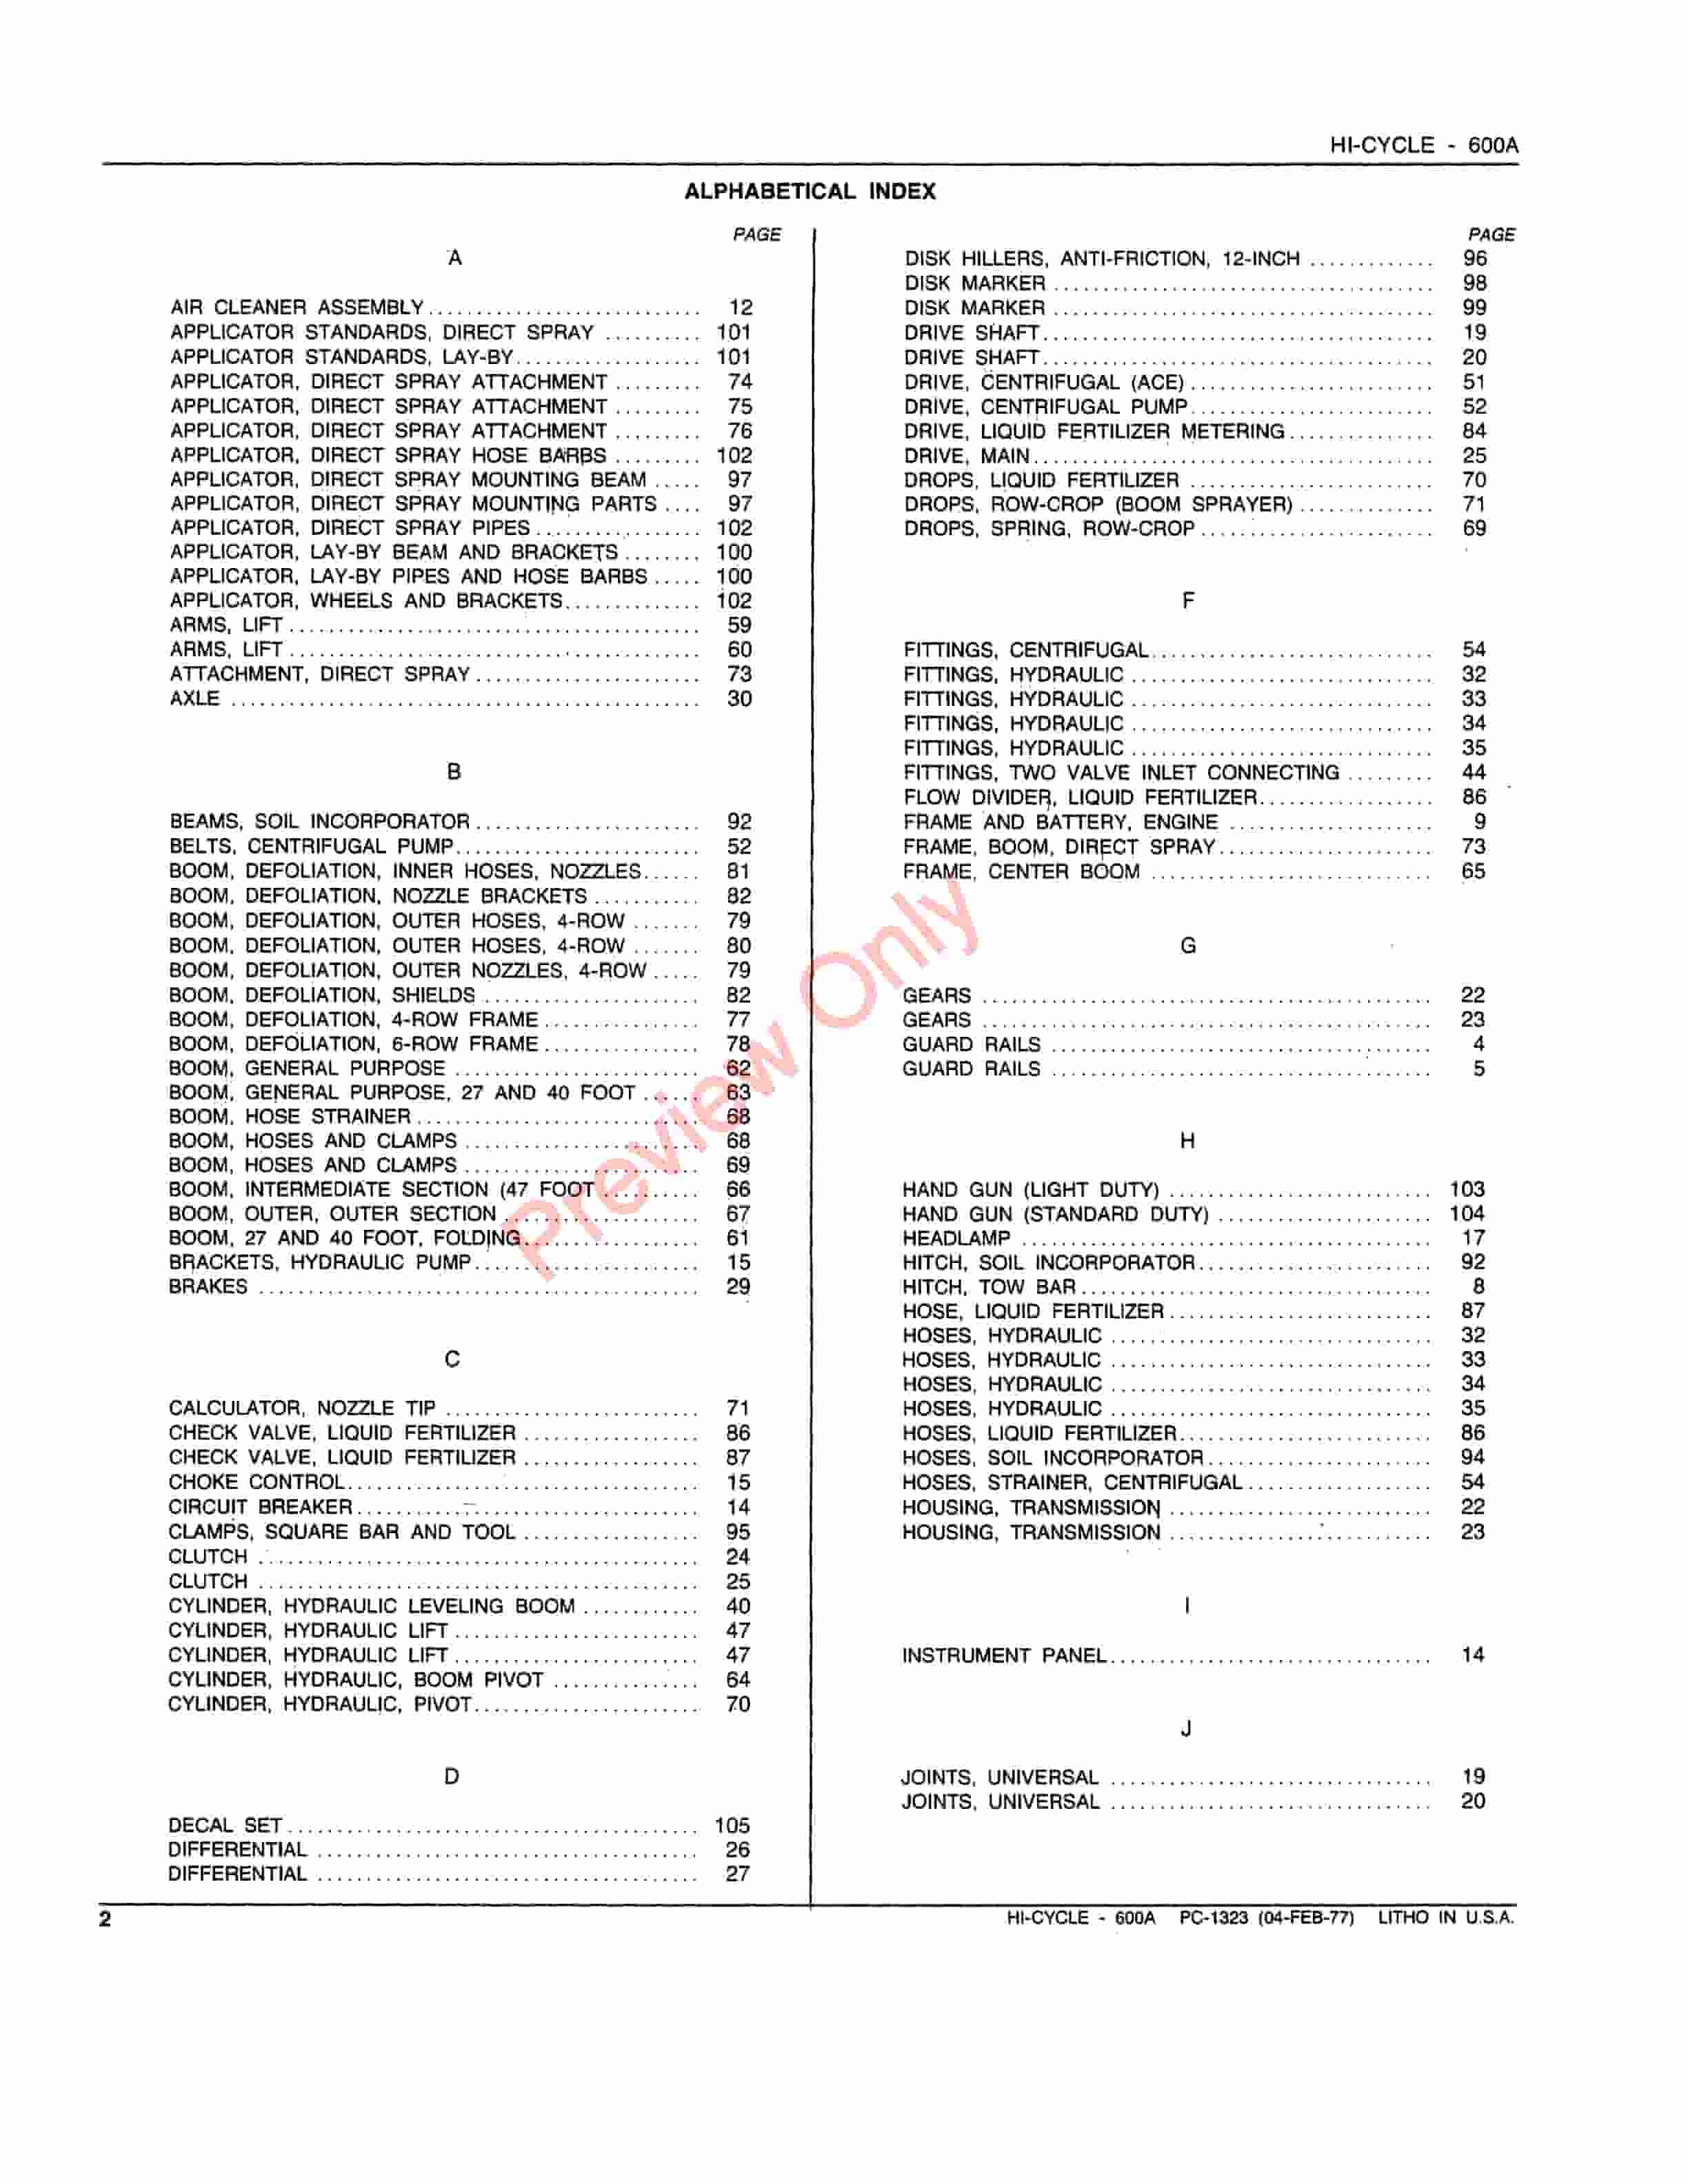 John Deere 600A Hi-Cycle Parts Catalog PC1323 04FEB77-4